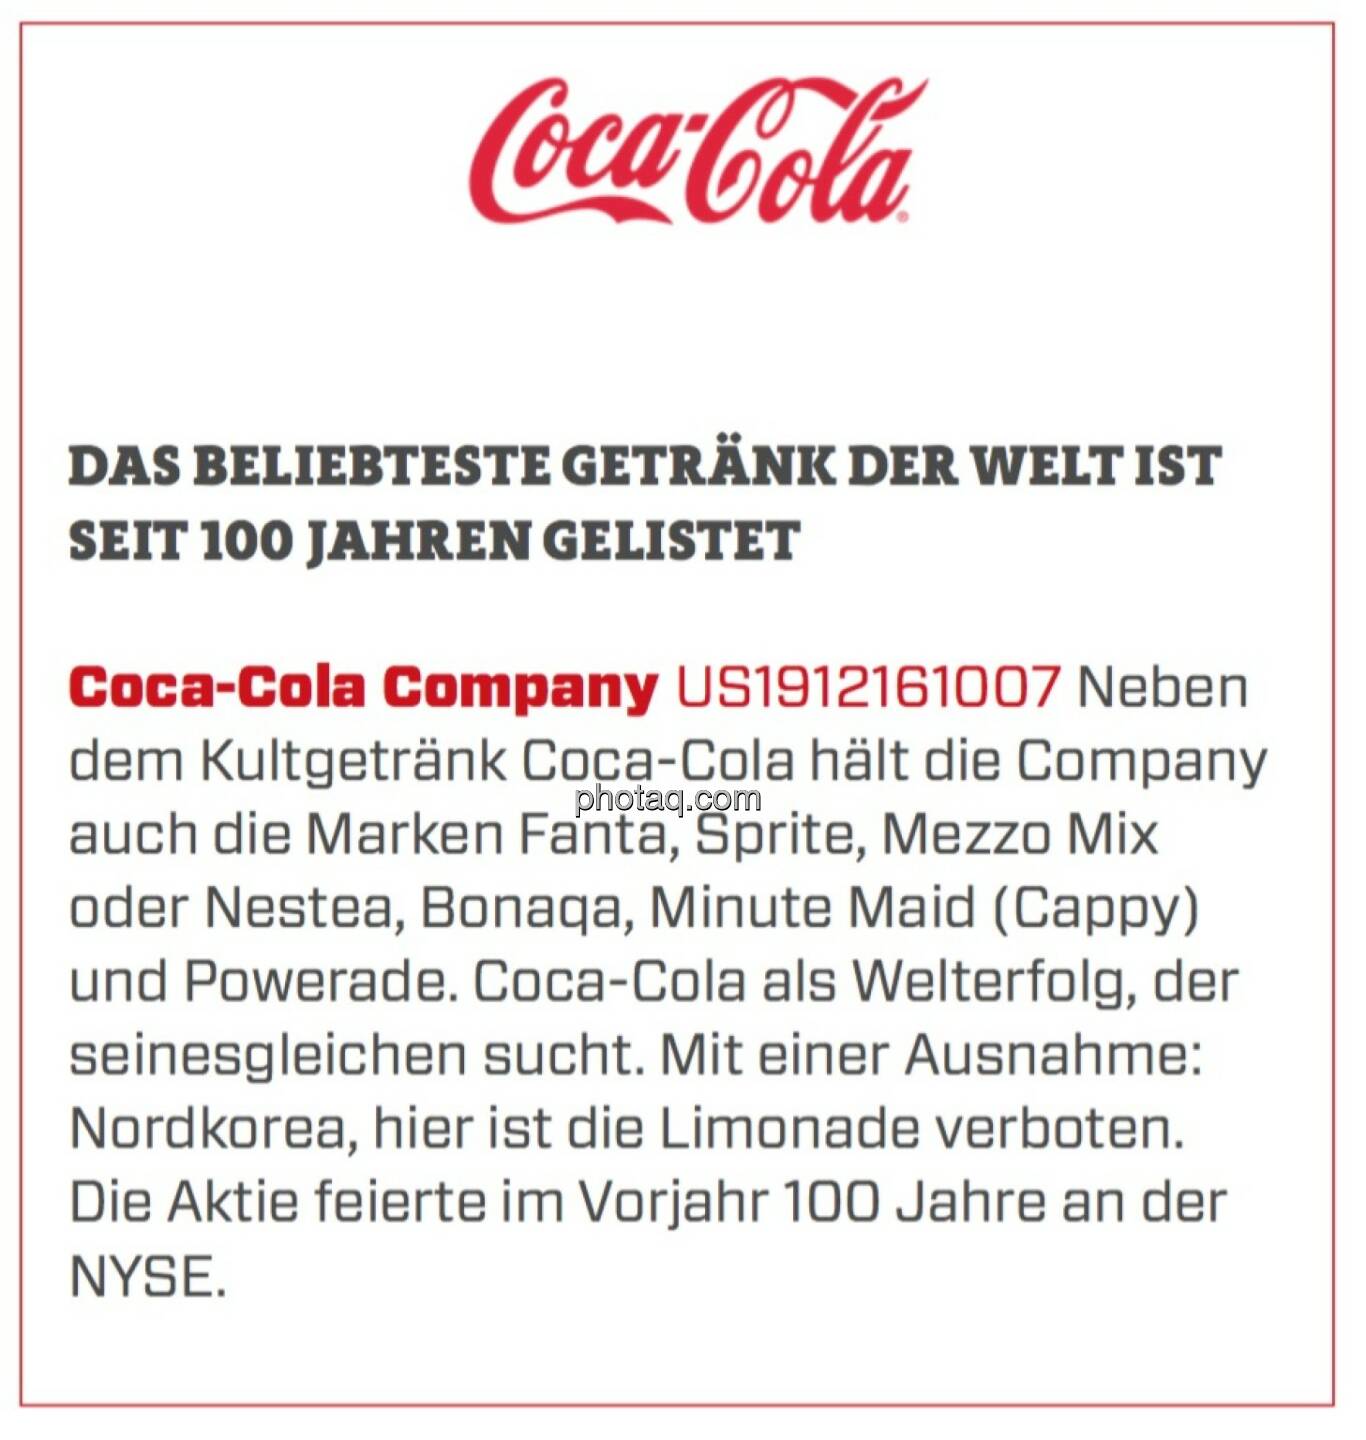 Coca-Cola Company - Das beliebteste Getränk der Welt ist seit 100 Jahren gelistet: Neben dem Kultgetränk Coca-Cola hält die Company auch die Marken Fanta, Sprite, Mezzo Mix oder Nestea, Bonaqa, Minute Maid (Cappy) und Powerade. Coca-Cola als Welterfolg, der seinesgleichen sucht. Mit einer Ausnahme: Nordkorea, hier ist die Limonade verboten. Die Aktie feierte im Vorjahr 100 Jahre an der NYSE.